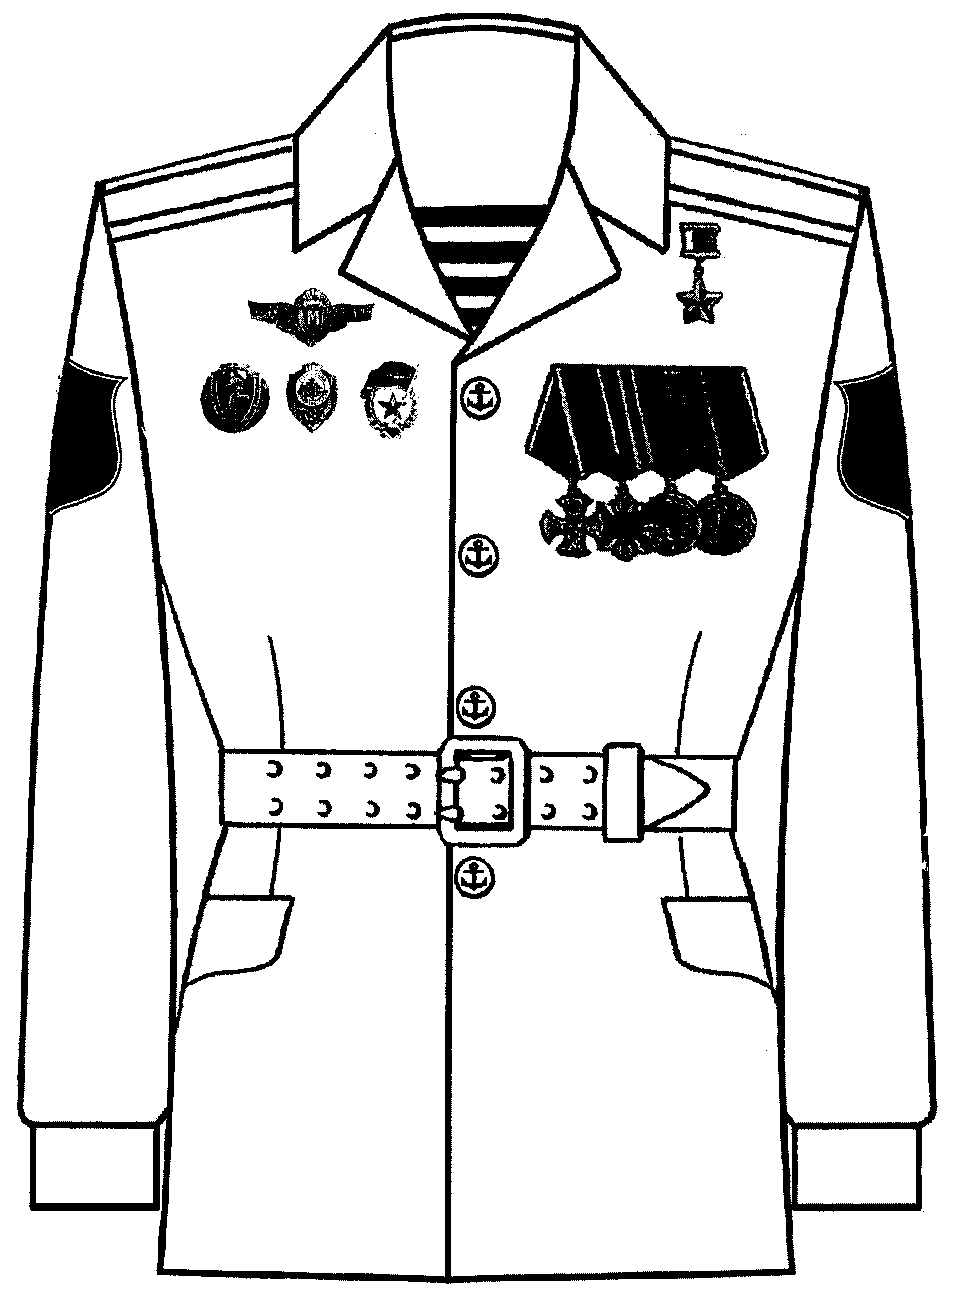 Правила ношения военной формы одежды военнослужащими